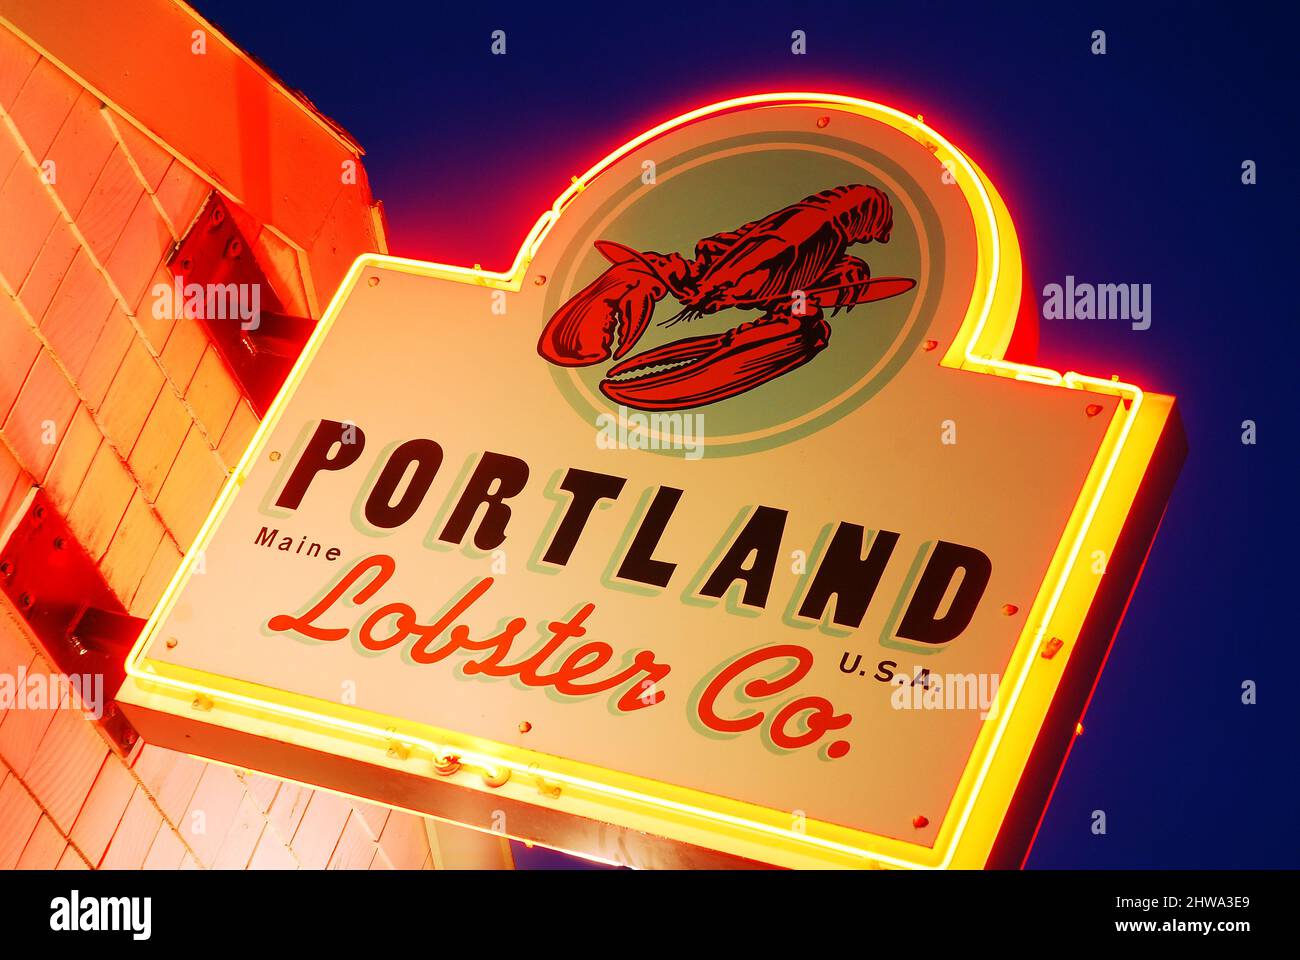 Il brillante neon del cartello Portland Lobster Company Foto Stock